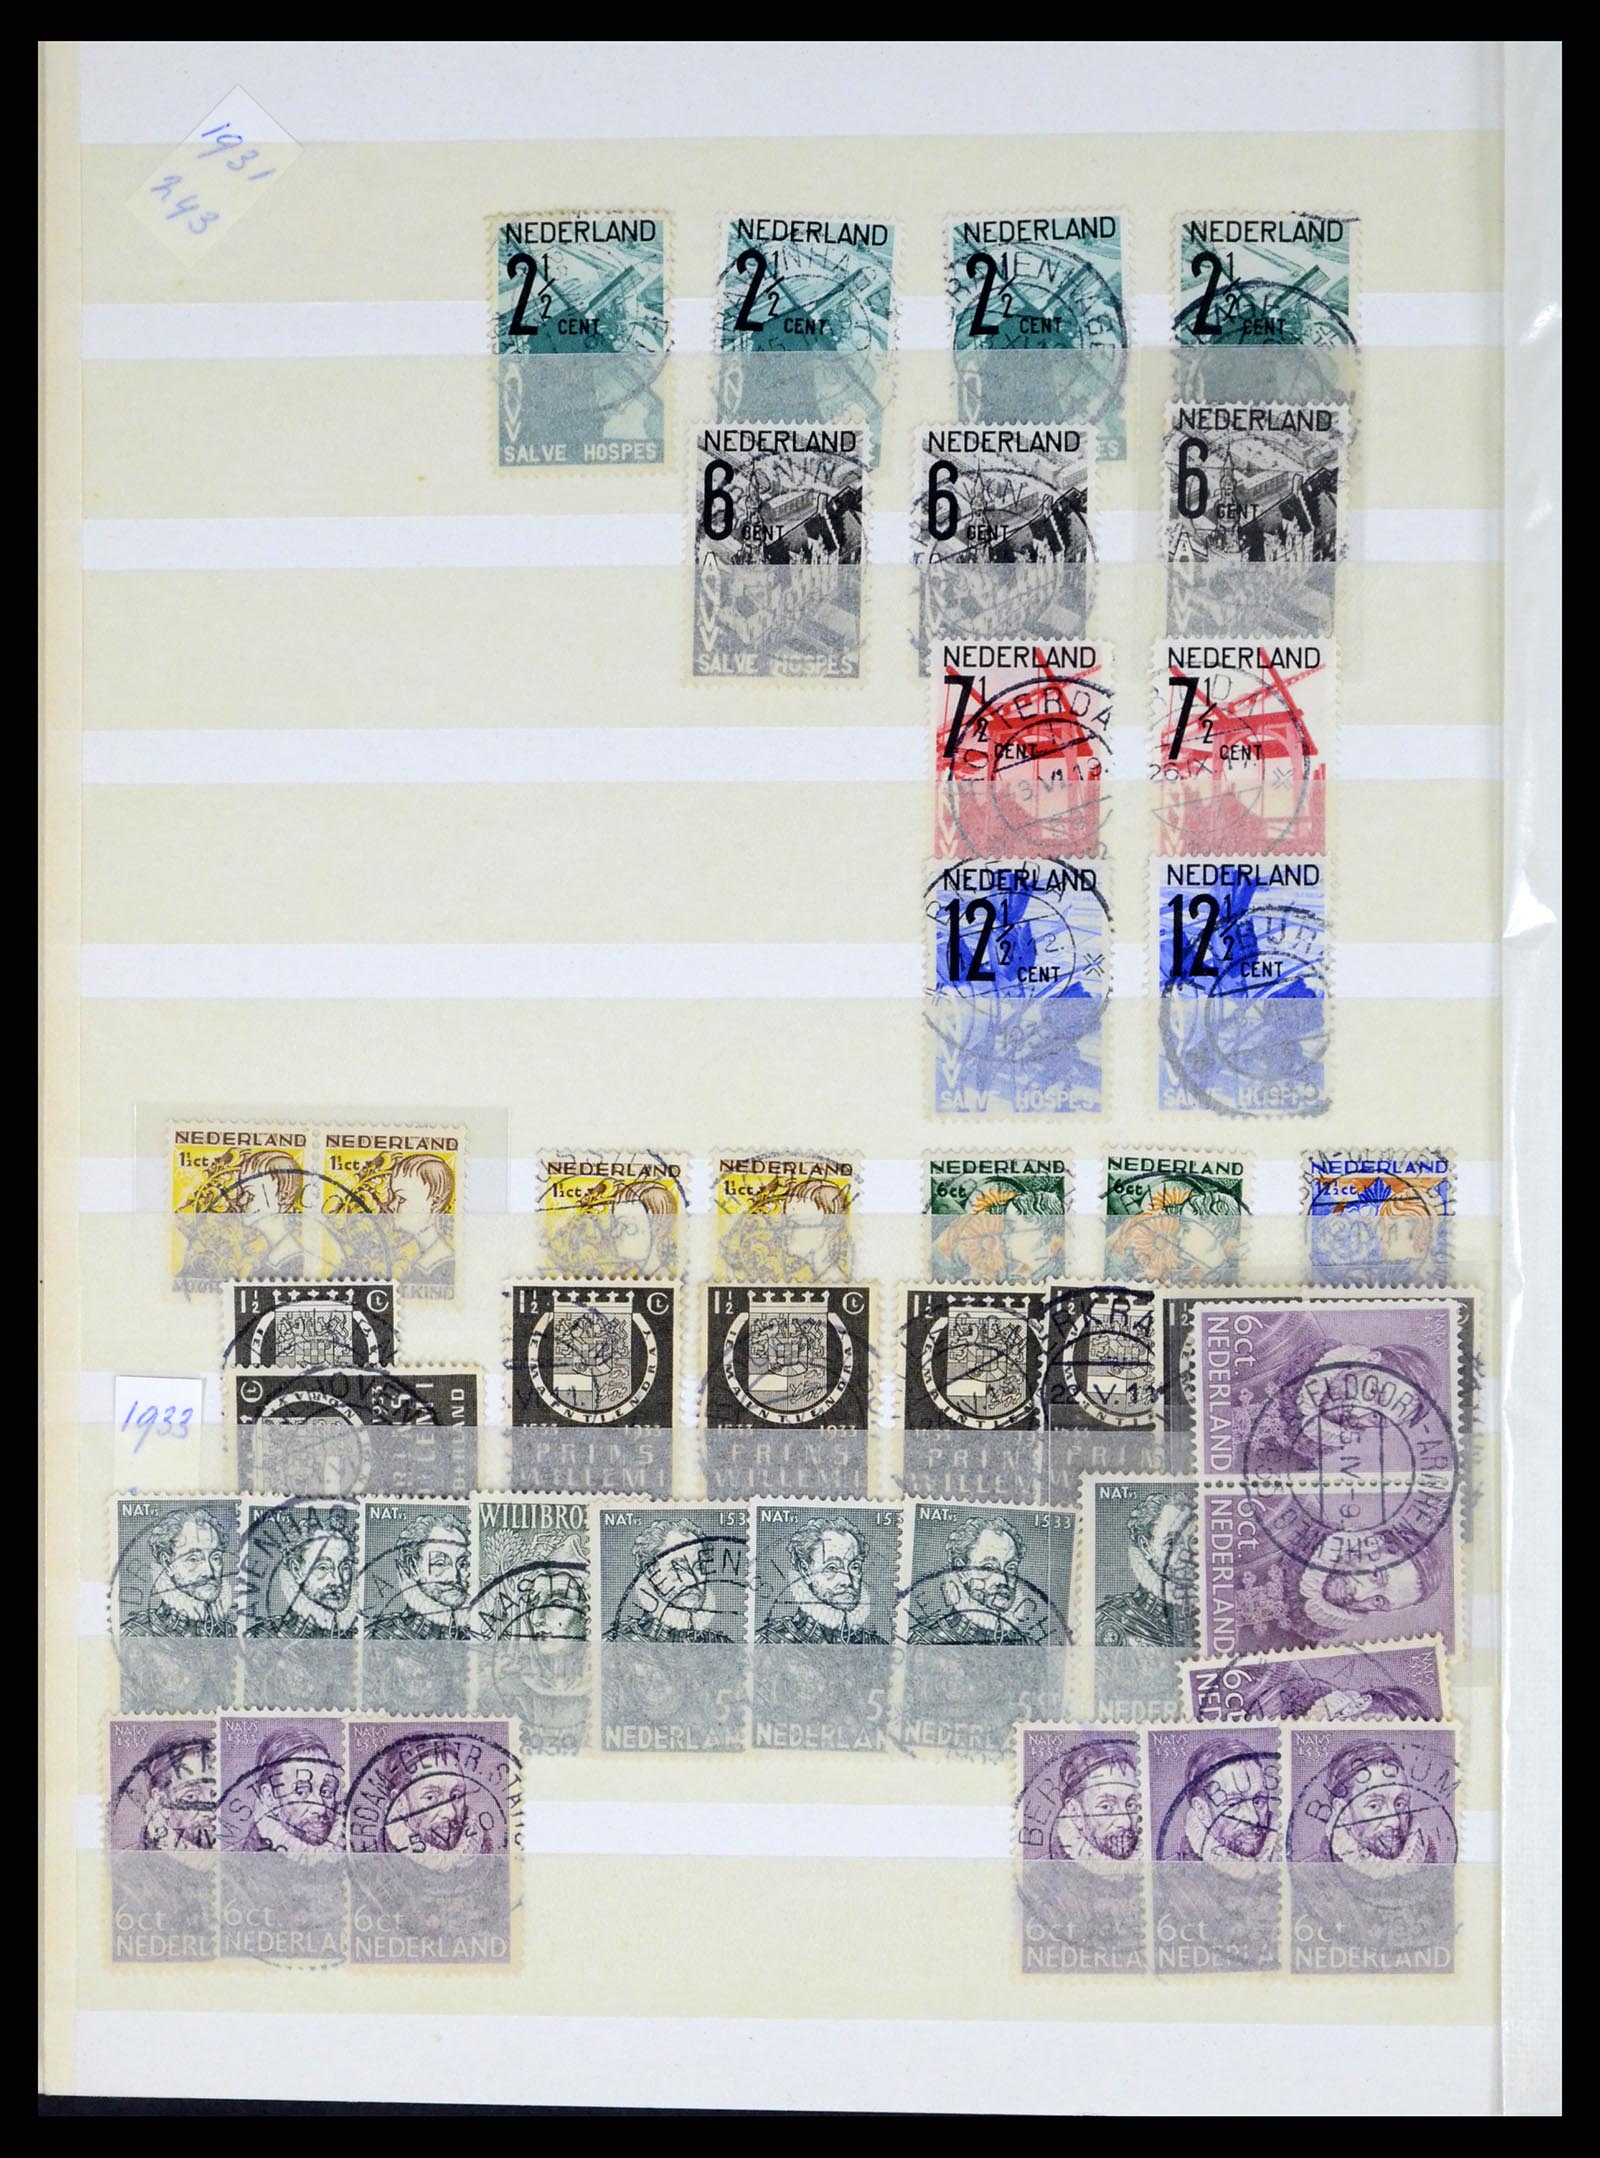 37424 016 - Postzegelverzameling 37424 Nederland kortebalk stempels.